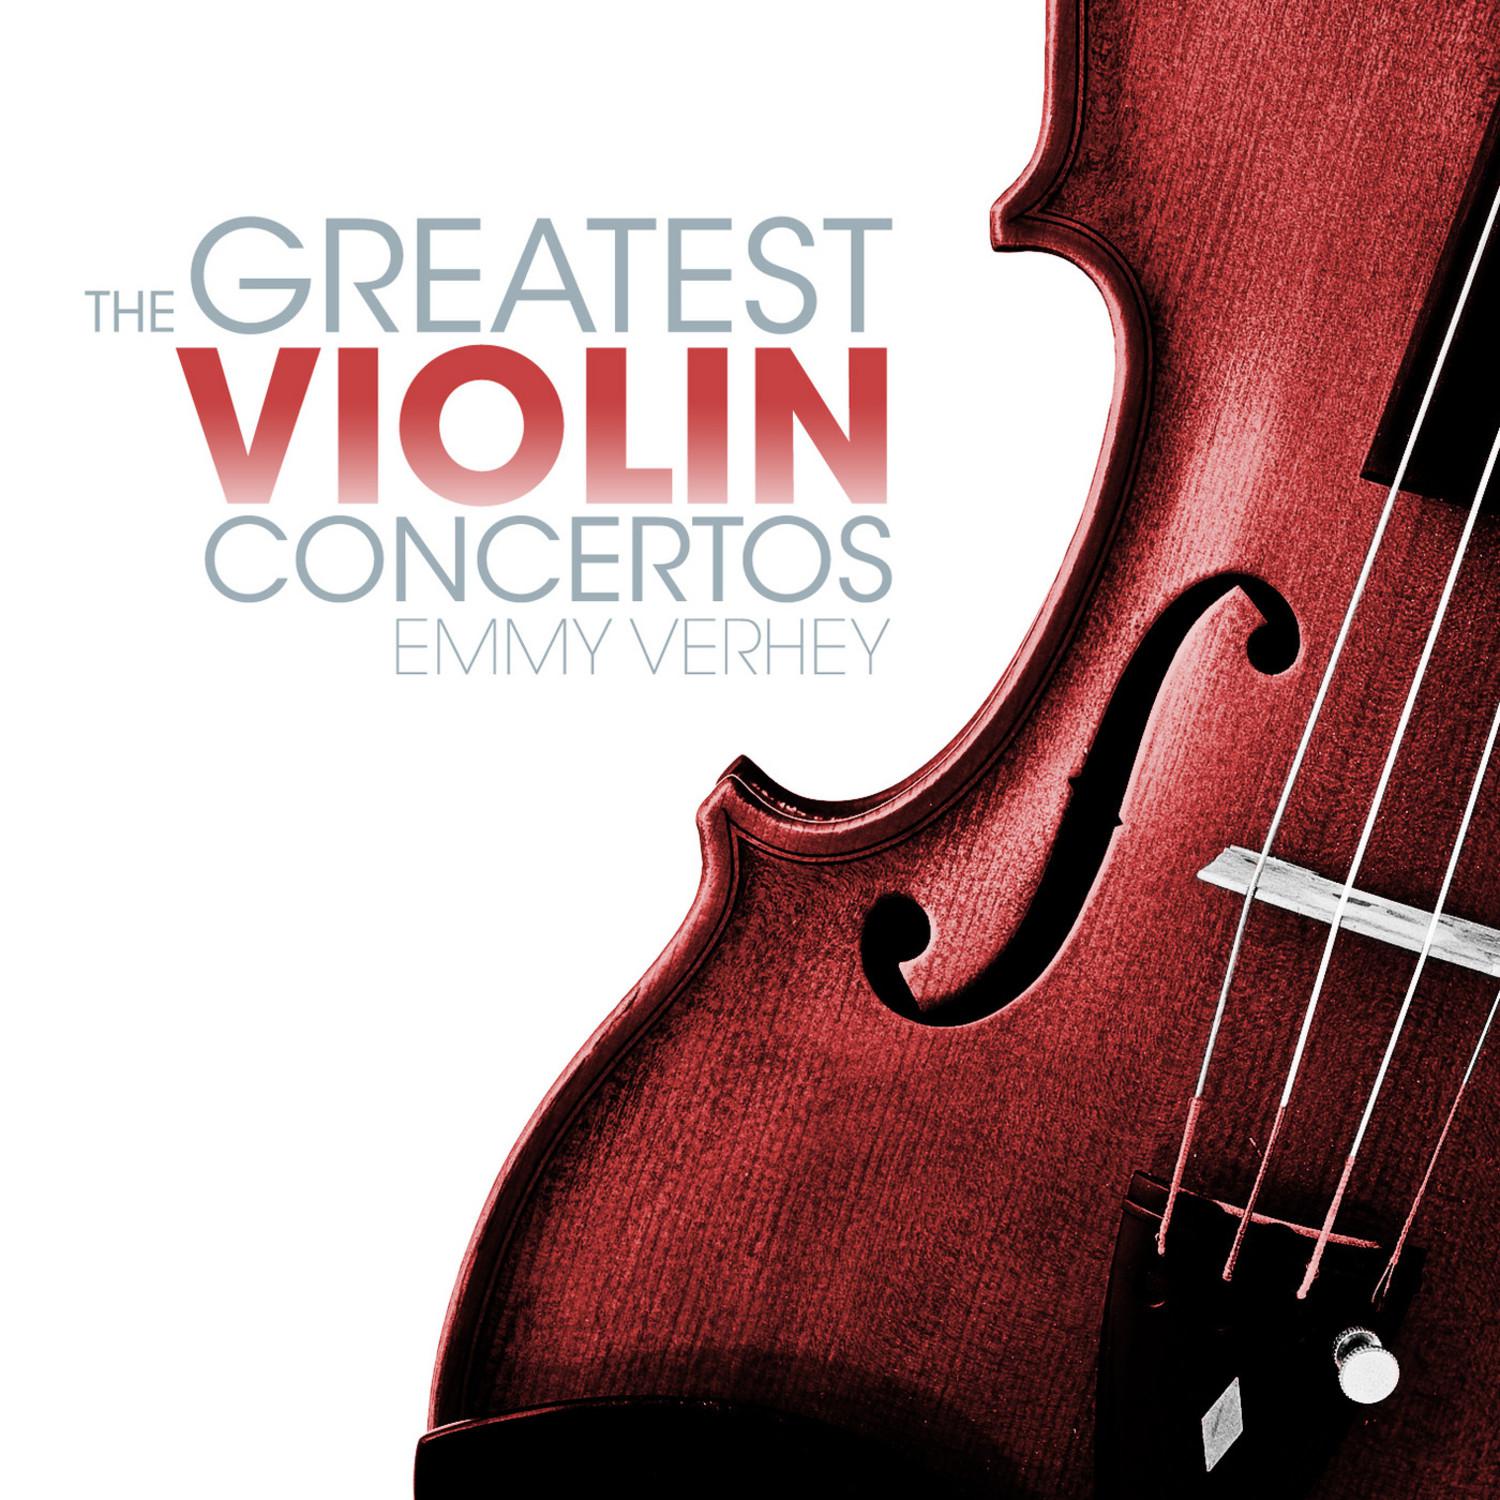 Concerto in A Minor for Violin, Cello and Orchestra, Op. 102: III. Vivace non troppo